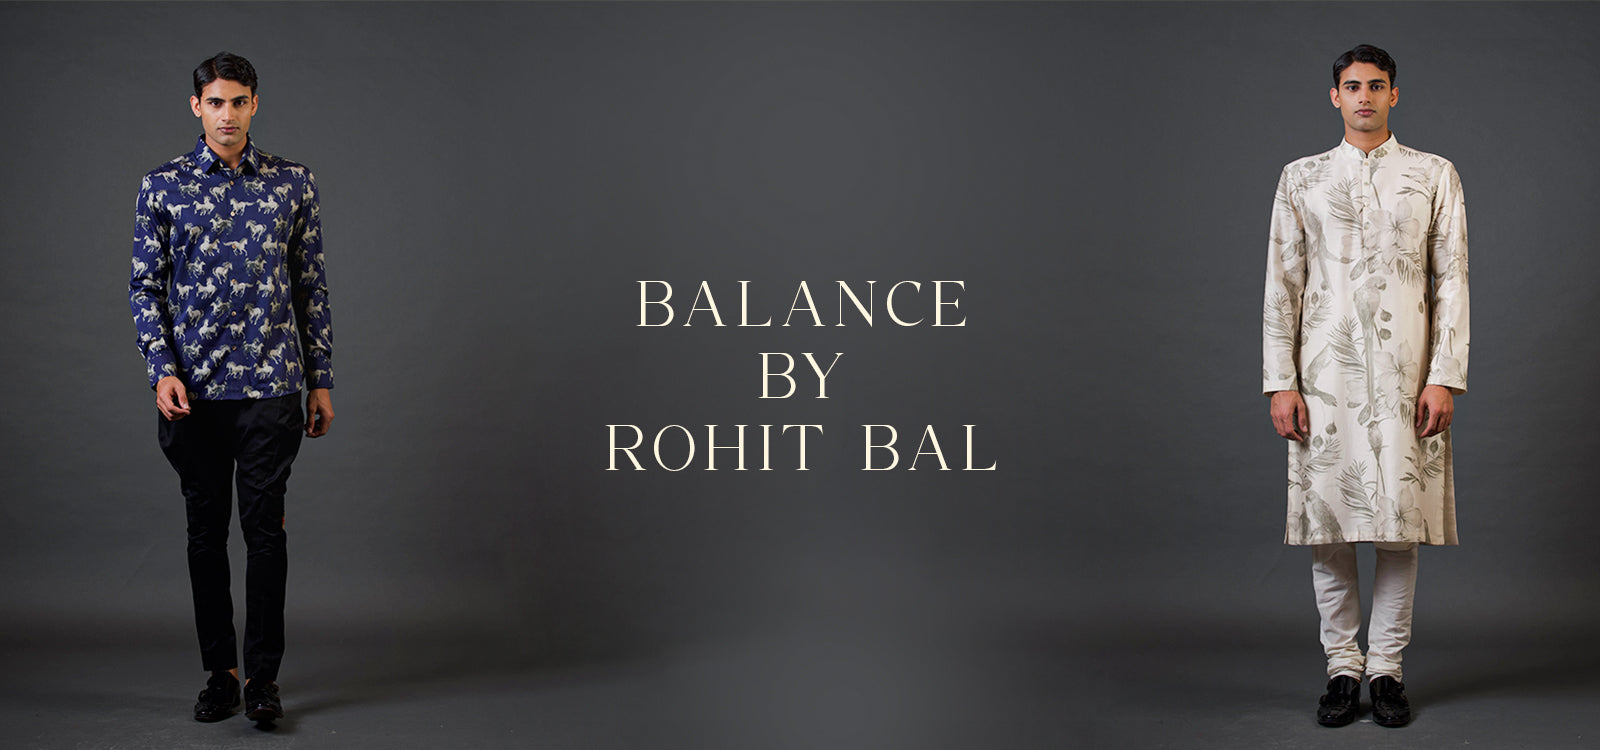 BALANCE BY ROHIT BAL